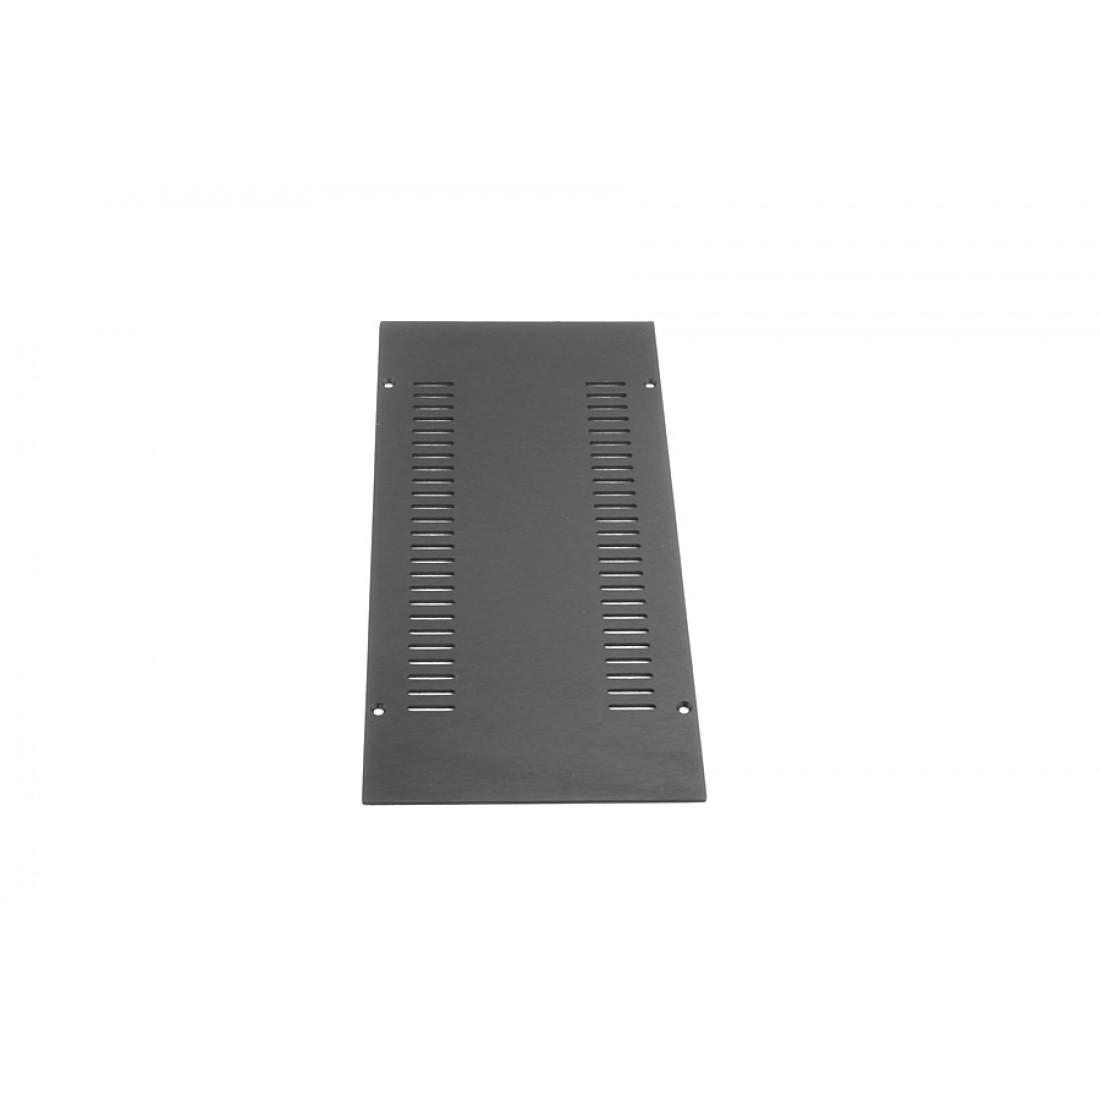 1NGXA143N - 1U Galaxy krabice, 124 x 230 x 40mm, 10mm panel černý